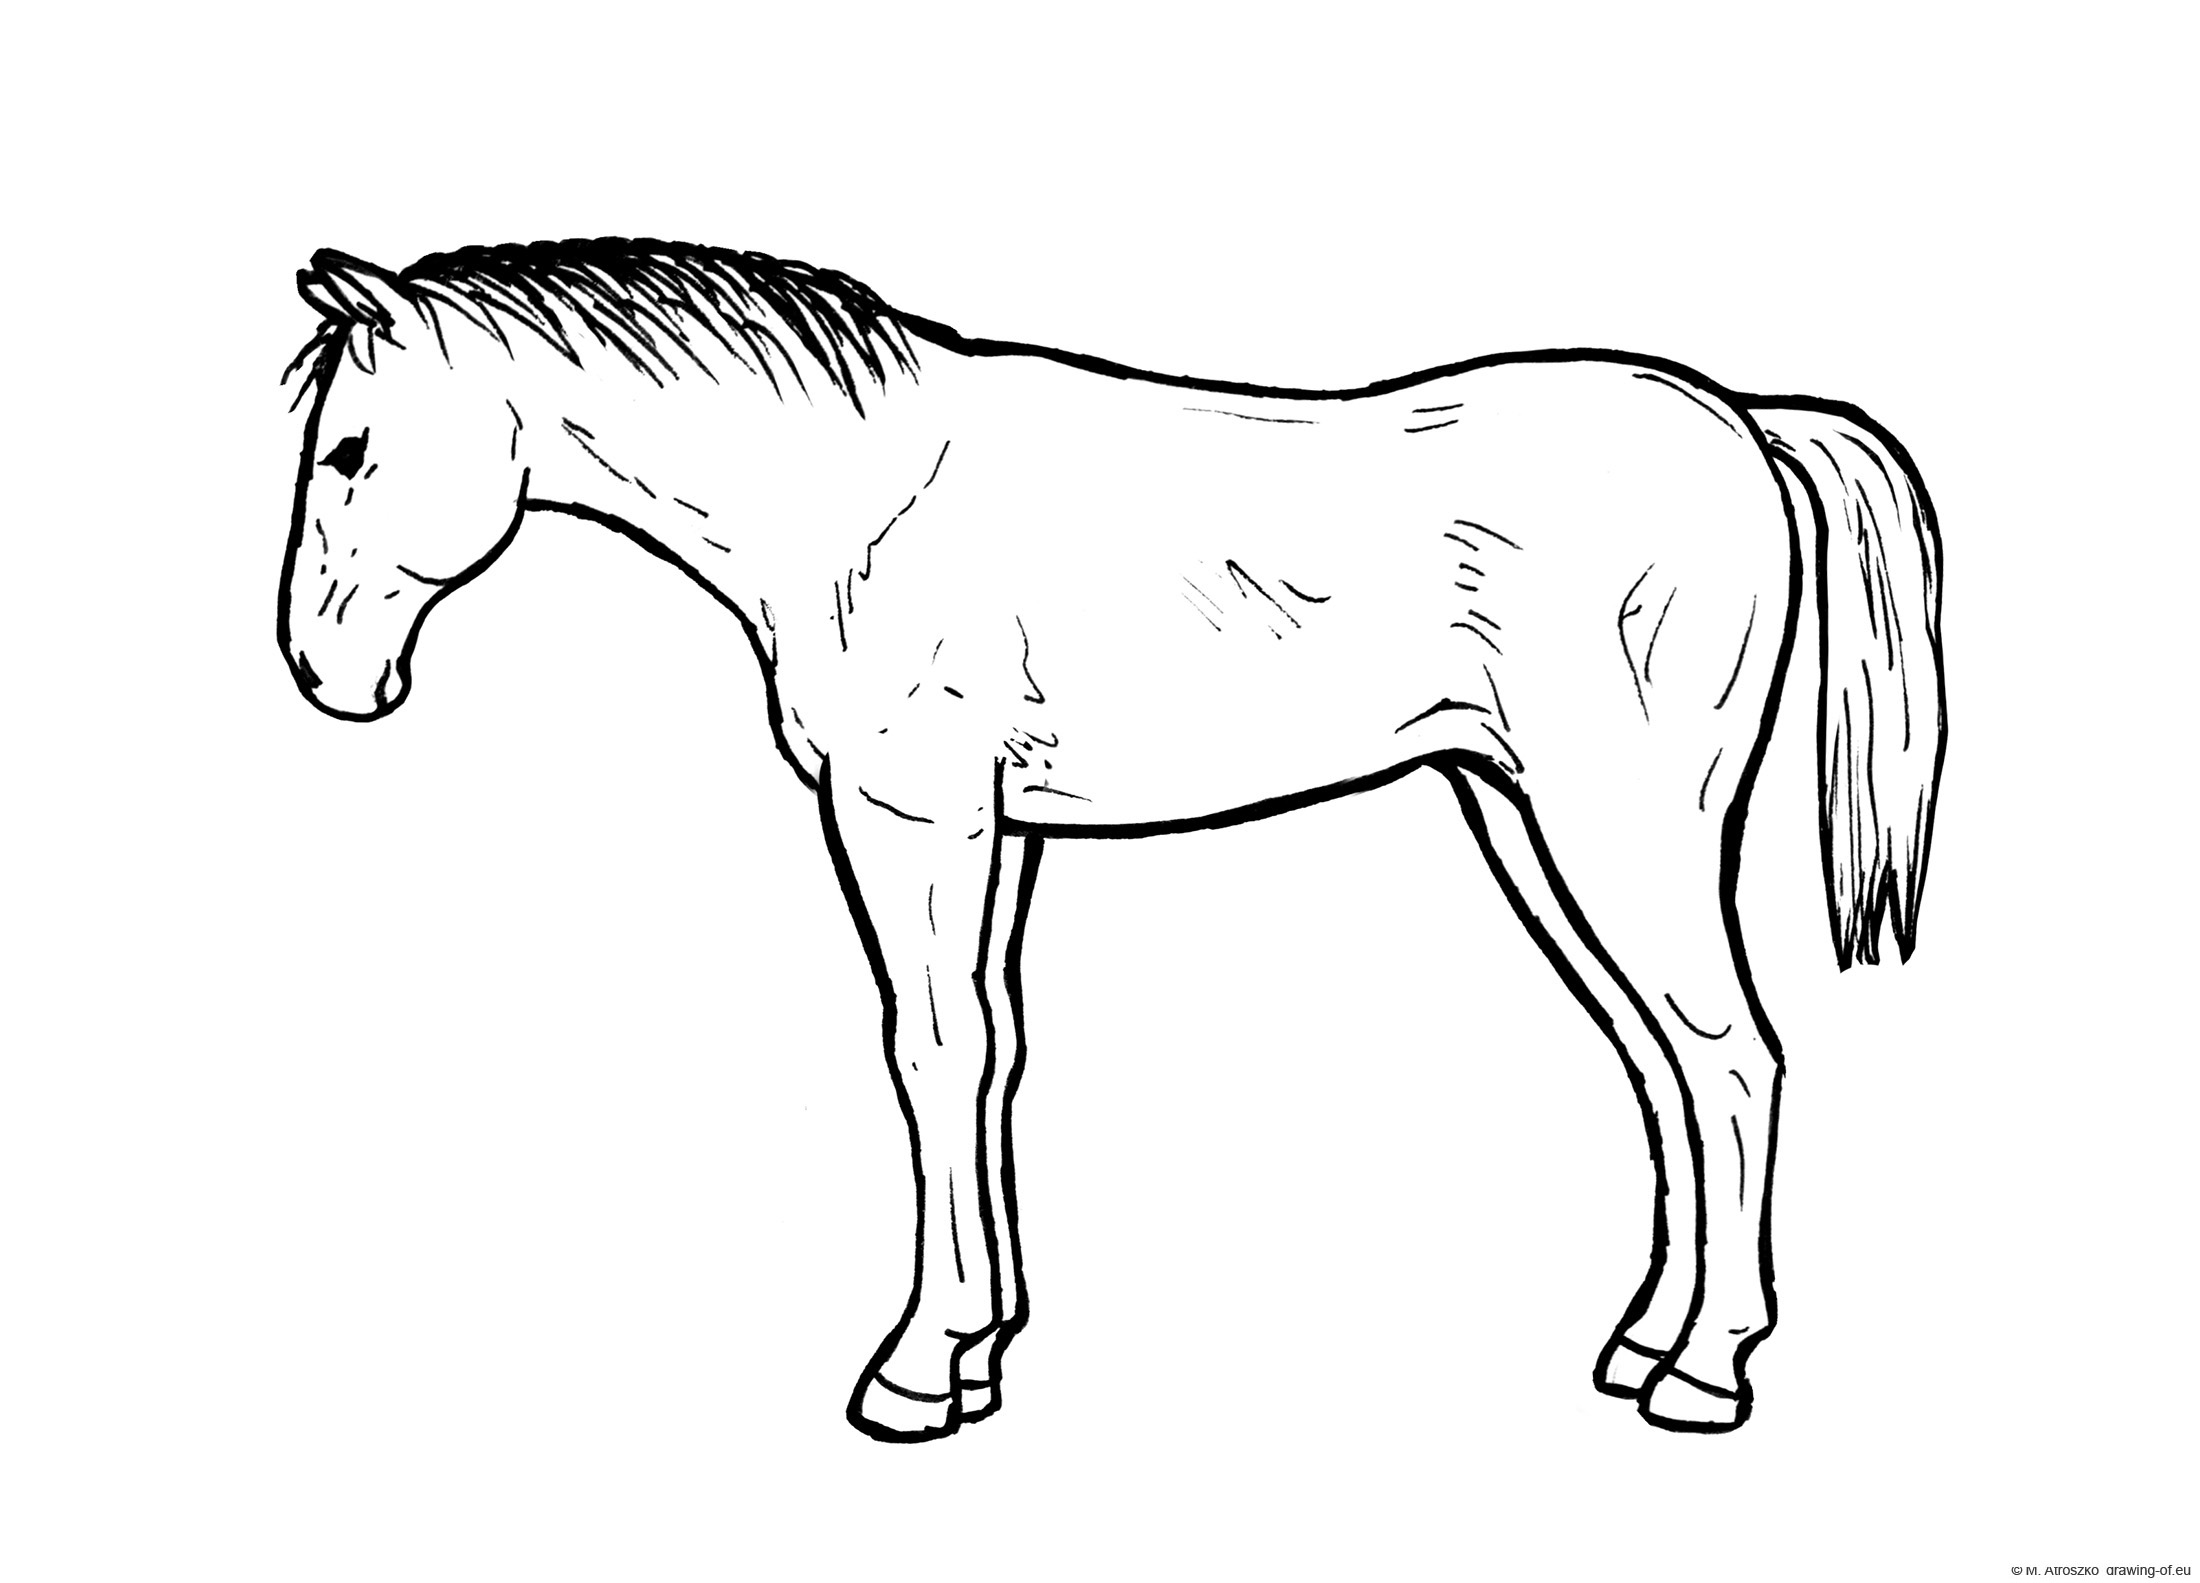 Drawing of horse drawingof.eu